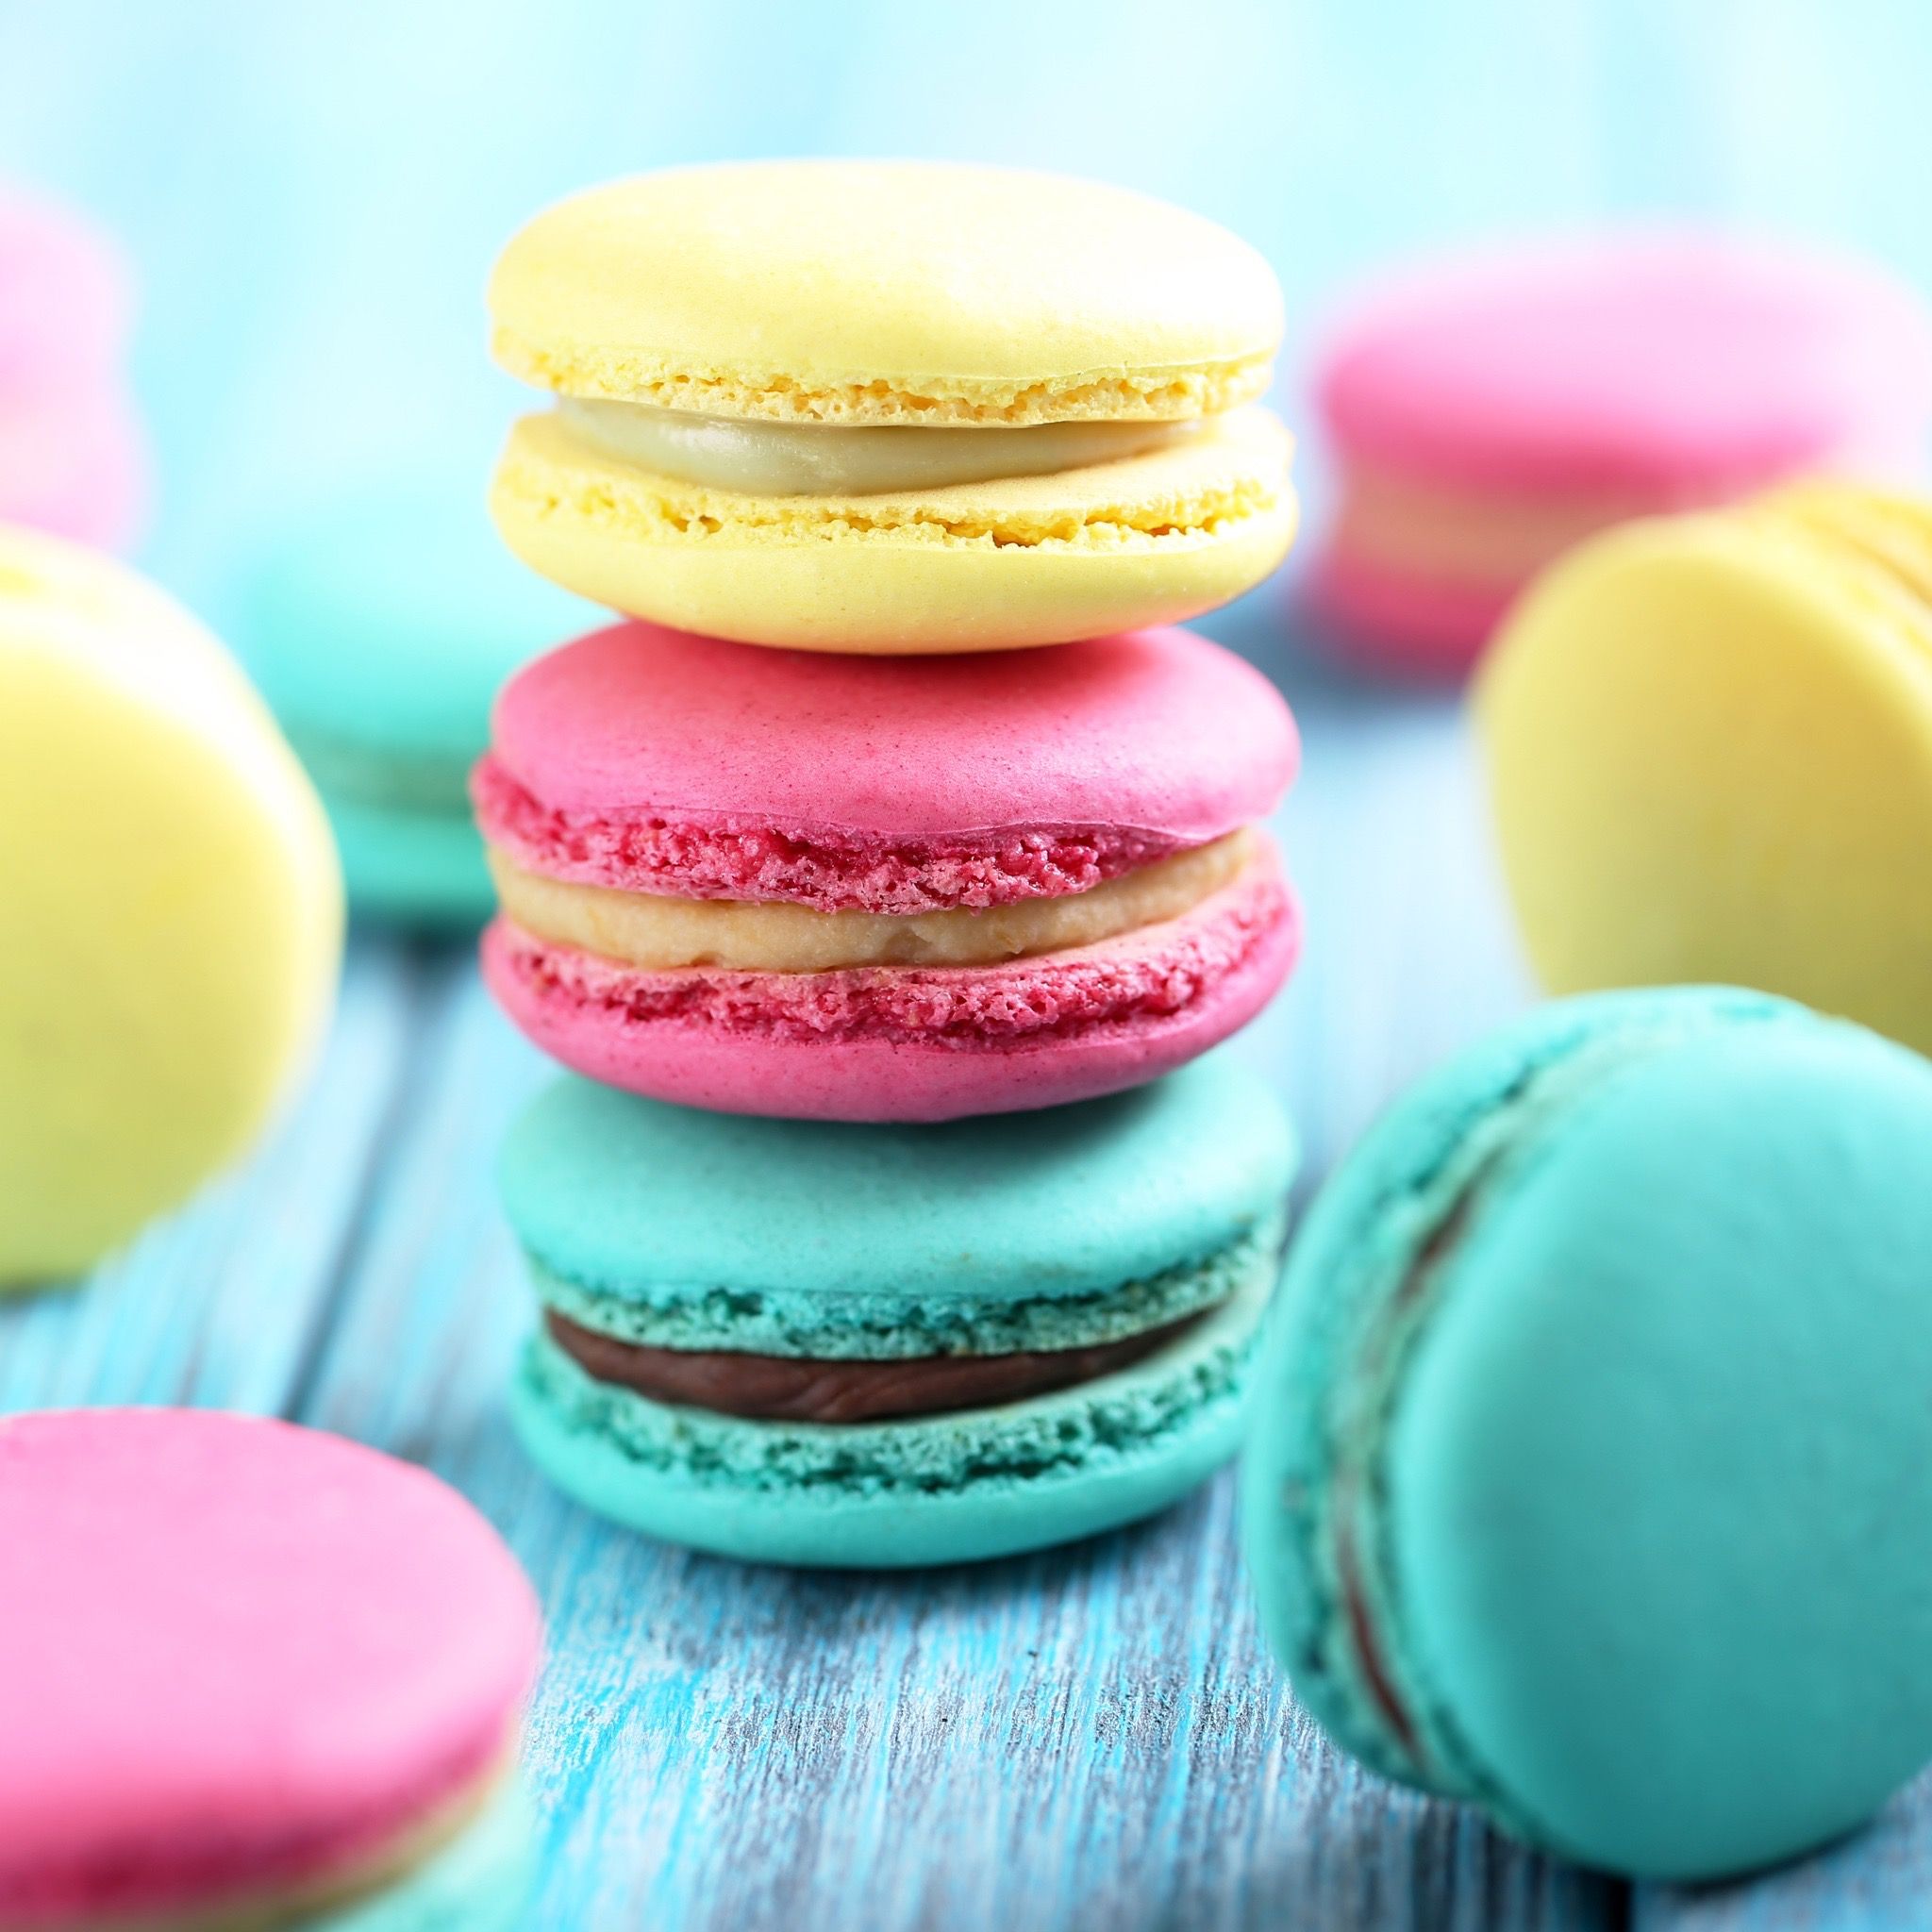 Pin by Iris Rose on Baking | Pinterest | Macarons, Macaroons and Food